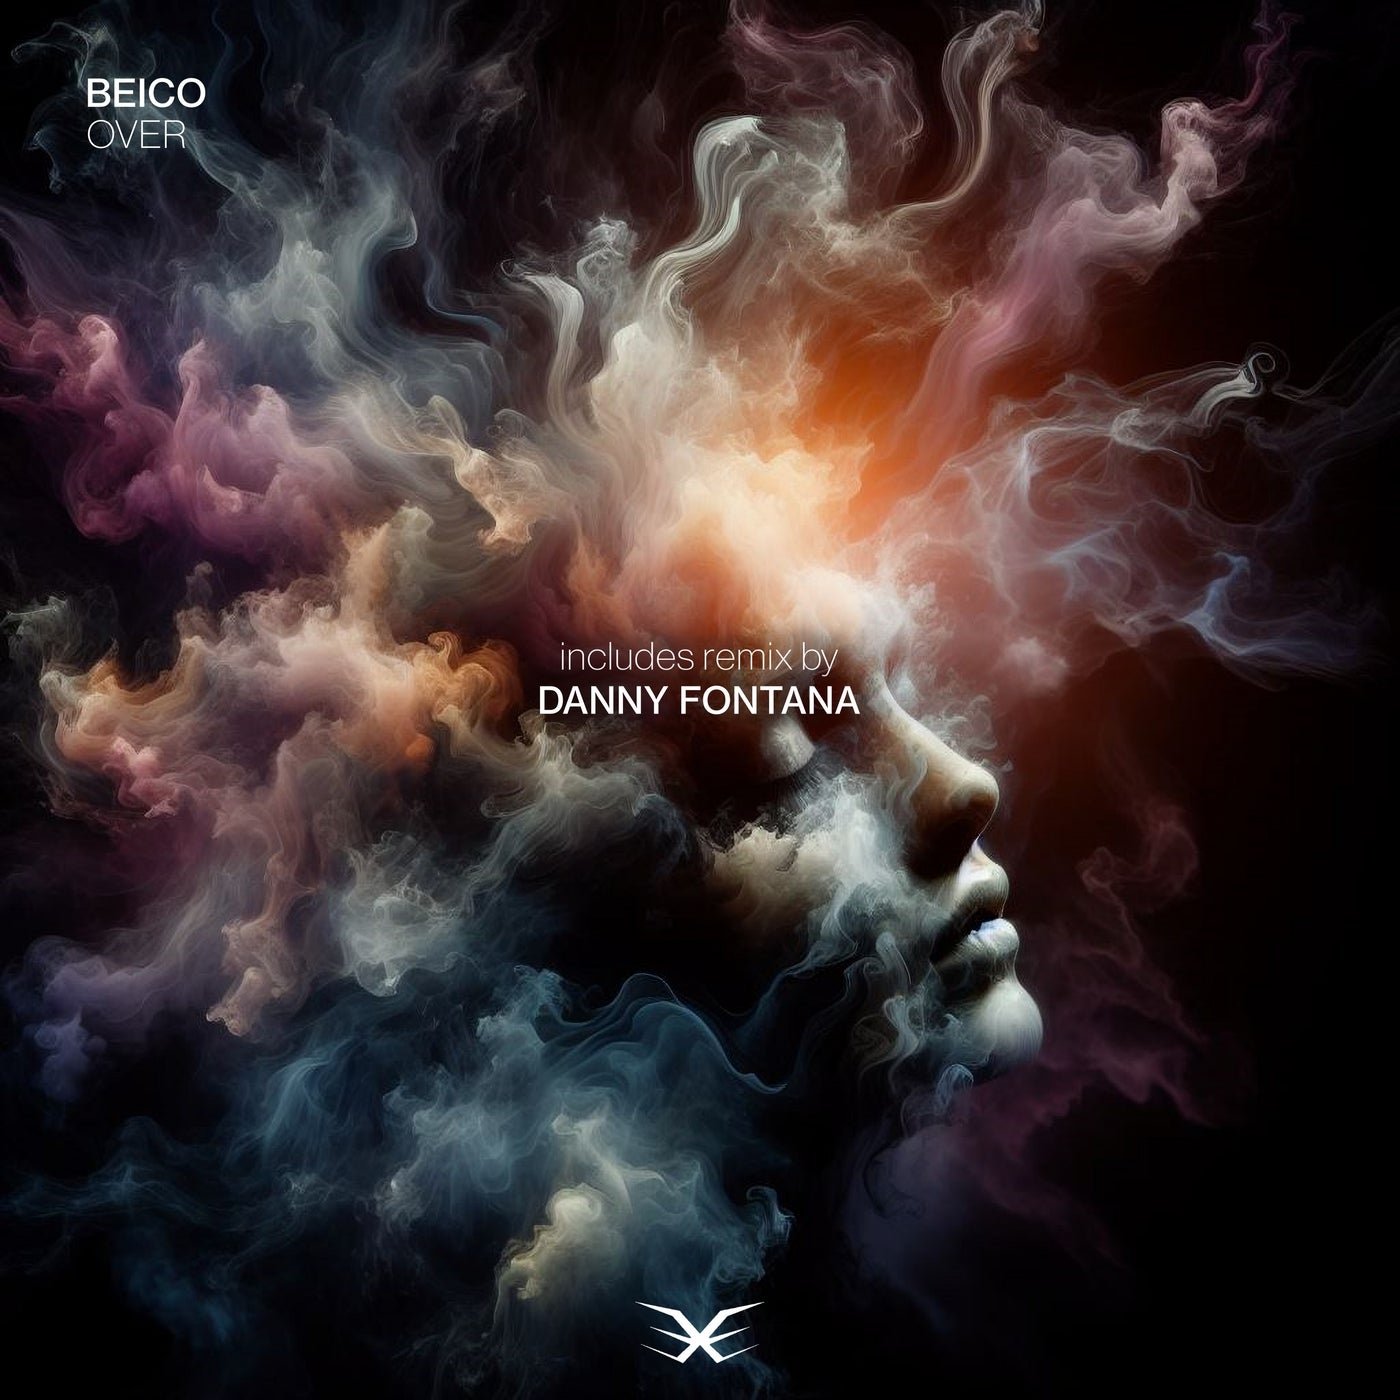 Cover - Beico - Over (Danny Fontana Remix)